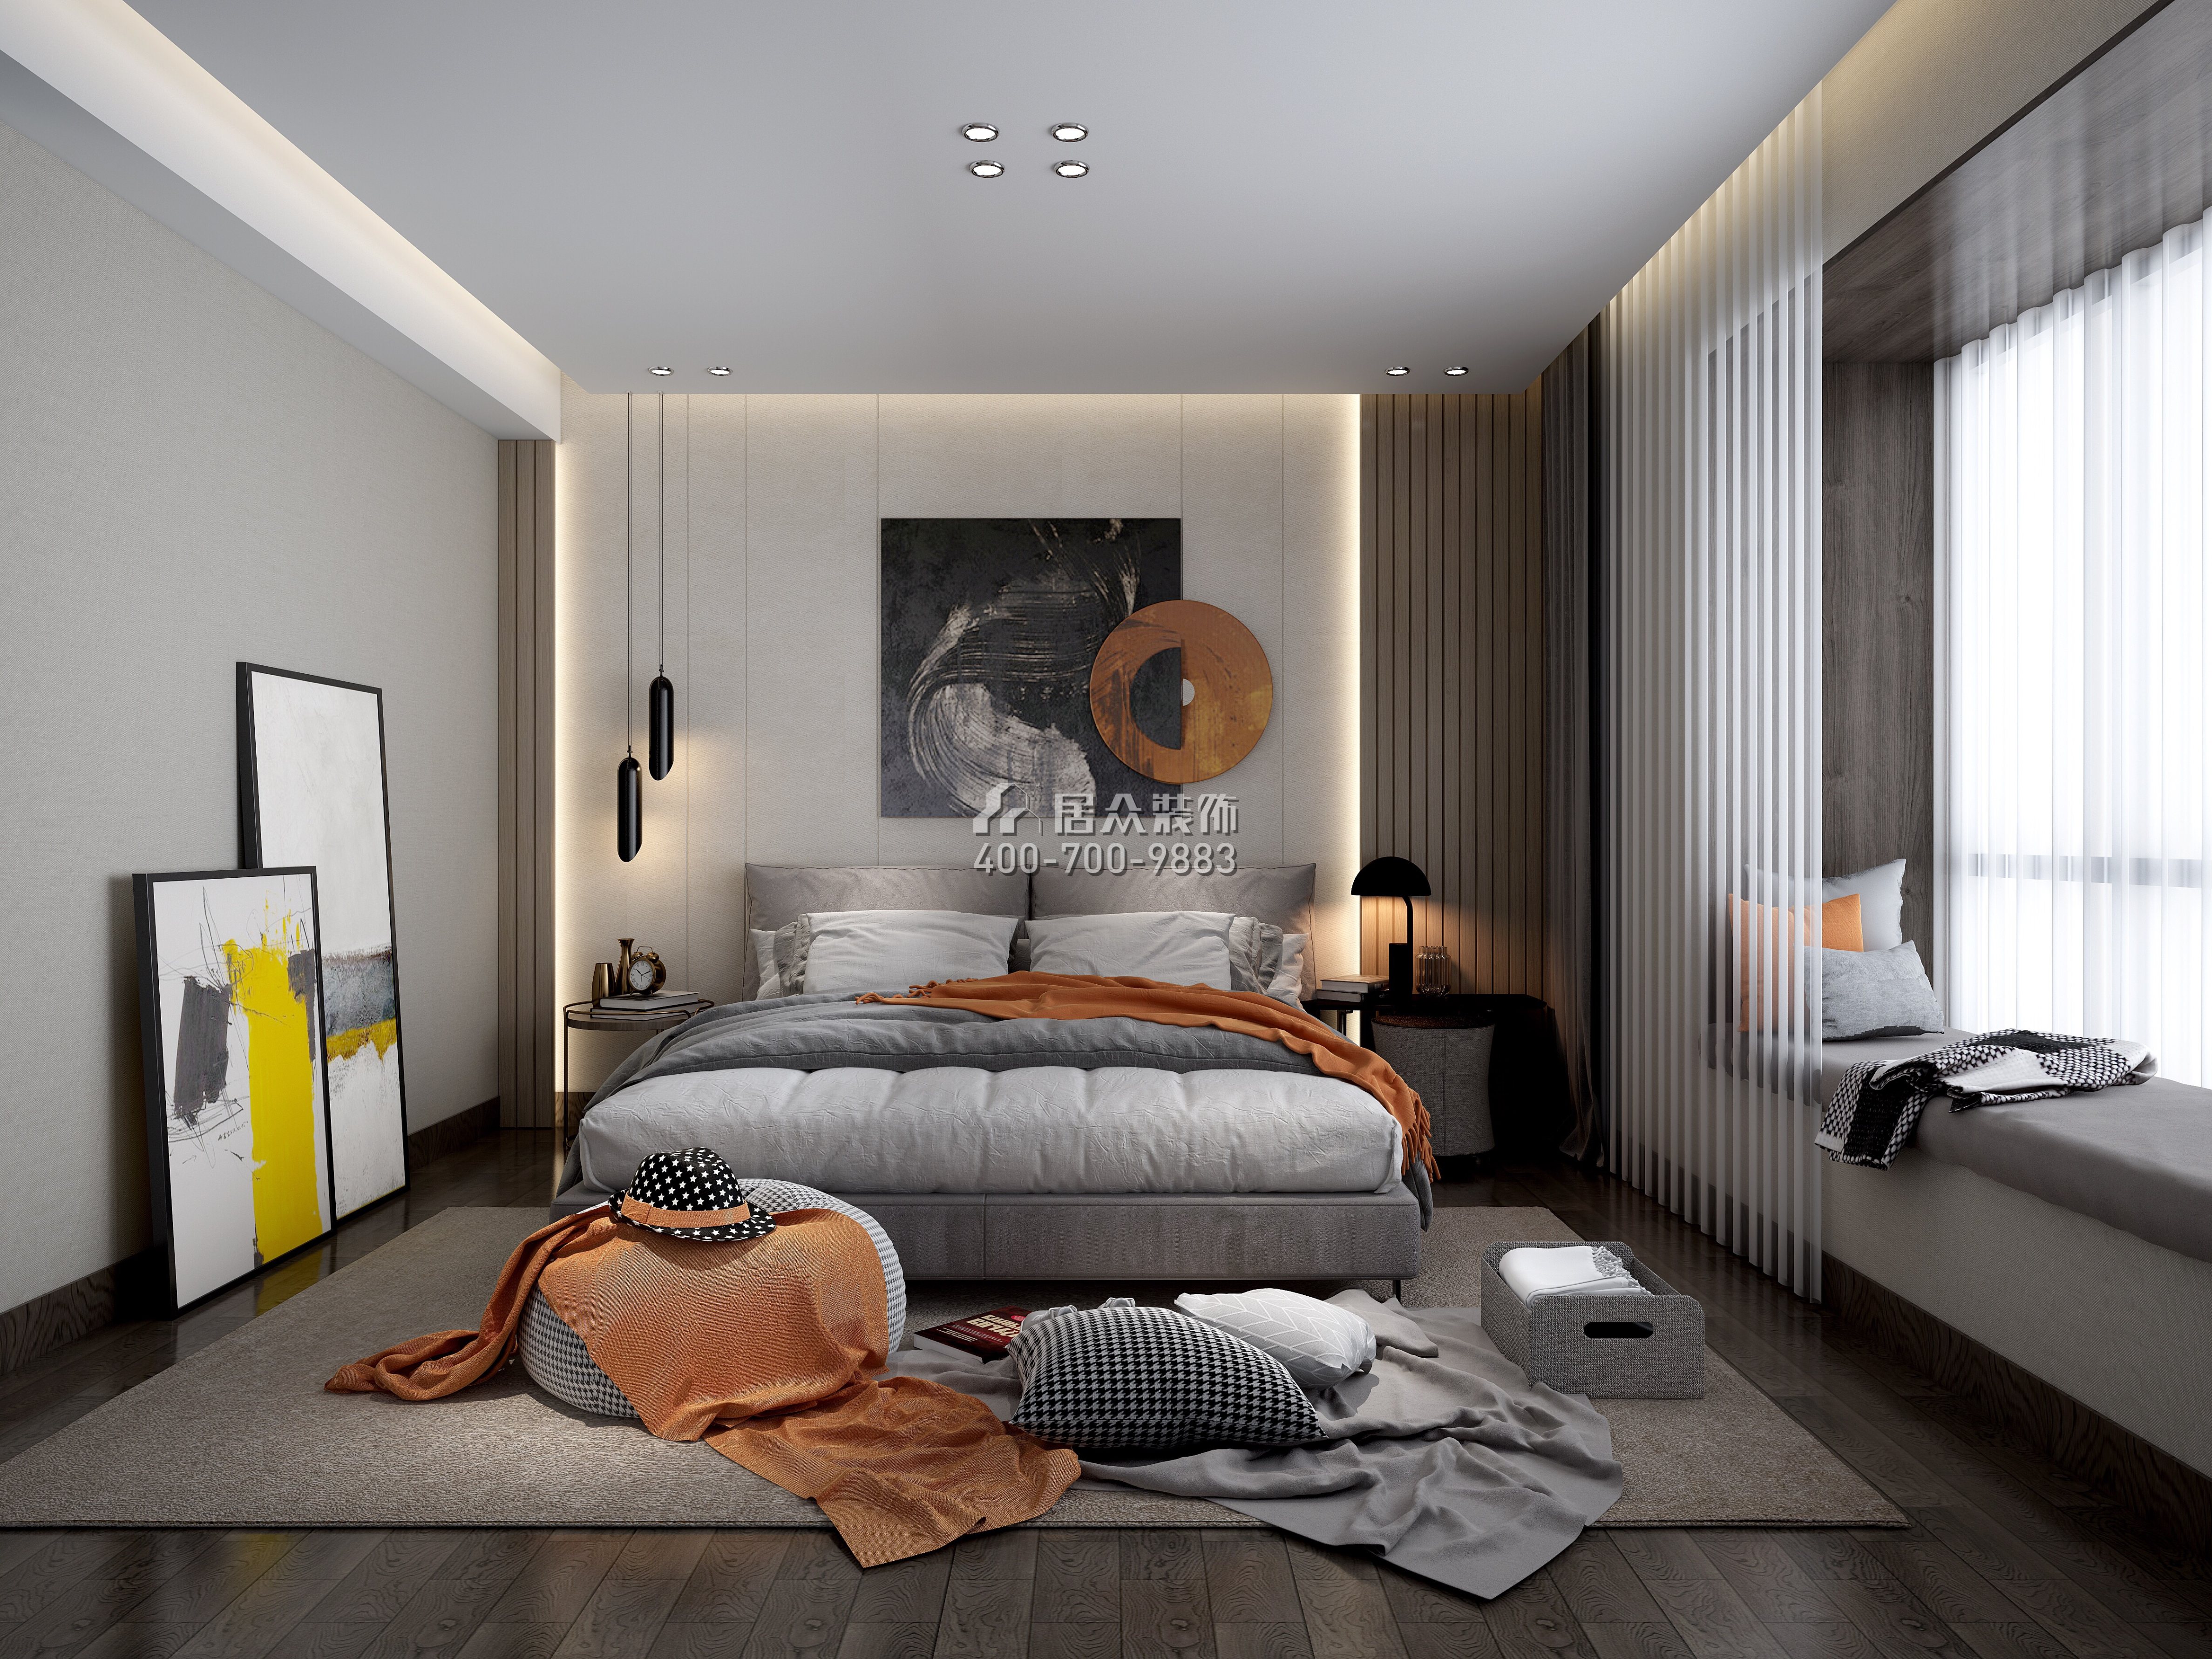 锦东花园190平方米现代简约风格平层户型卧室装修效果图